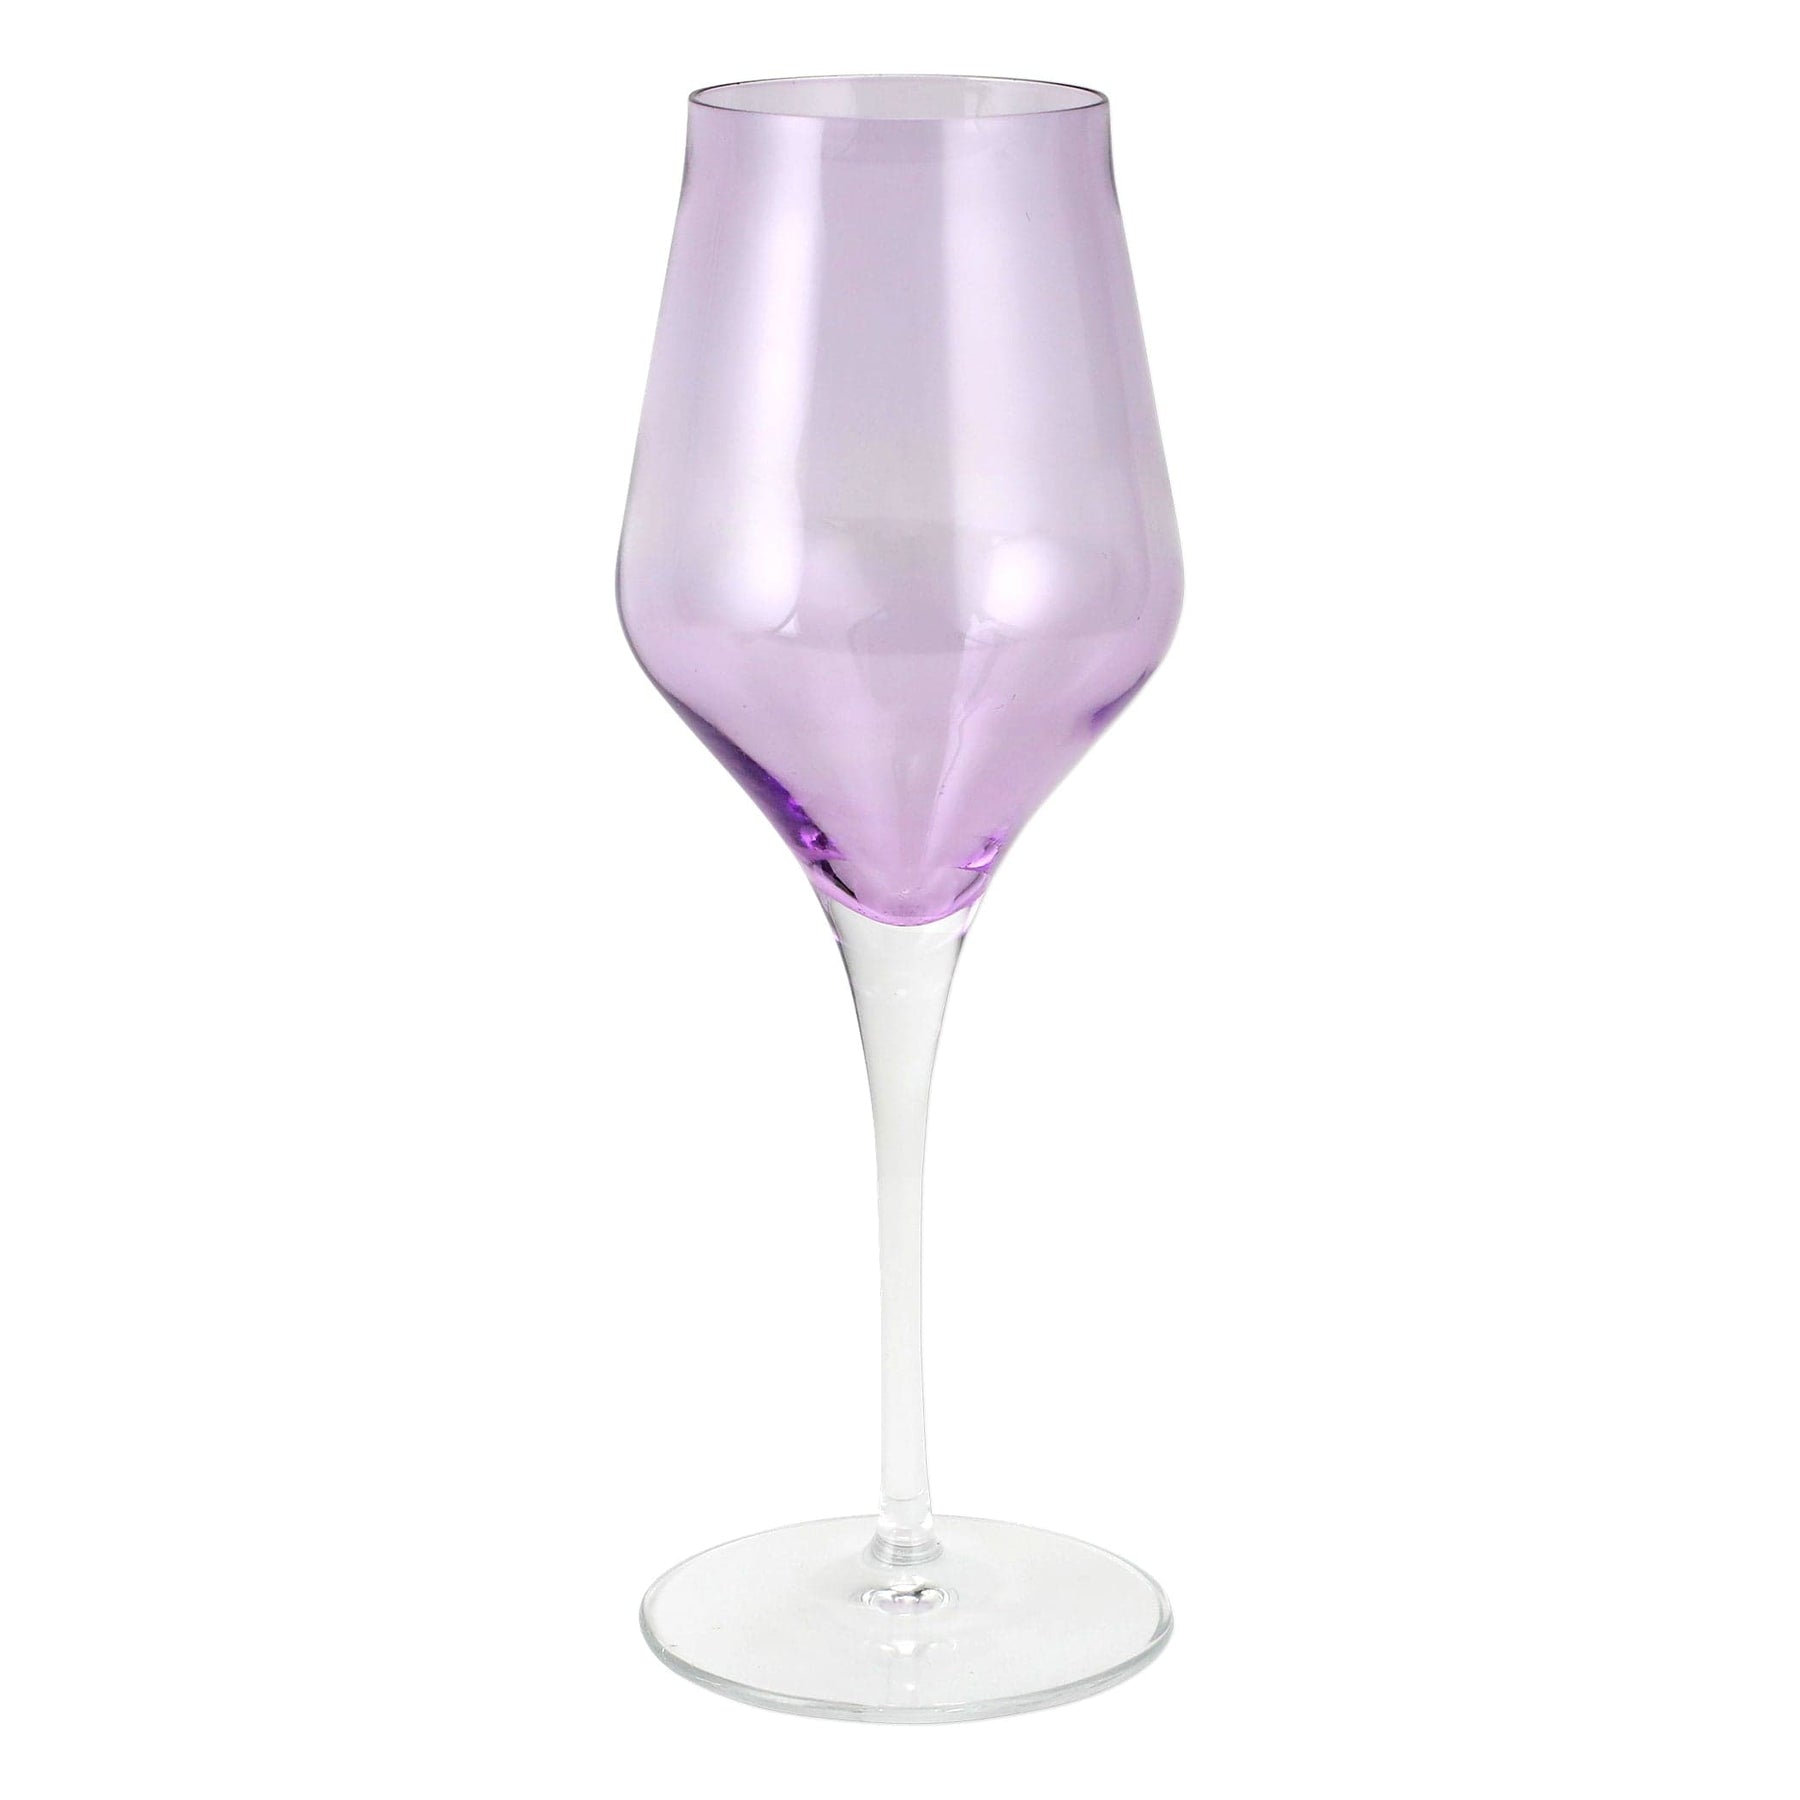 Vietri Puccinelli Classic Clear Wine Glass